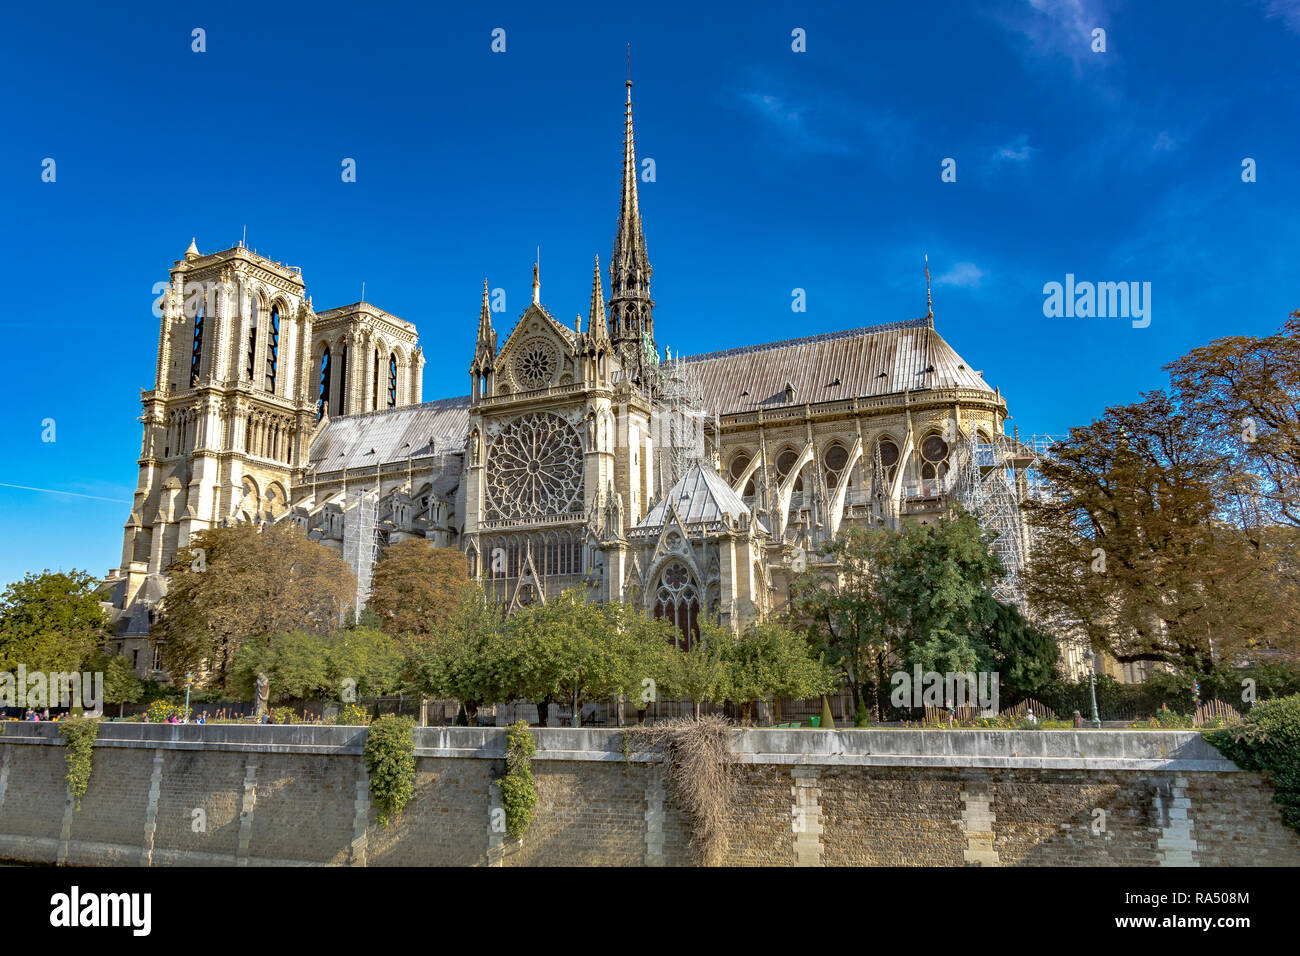 Notre-Dame de Paris auch als Kathedrale Notre Dame eine mittelalterliche Kathedrale auf der Île de la Cité im 4. arrondissement von Paris bekannt Stockfoto